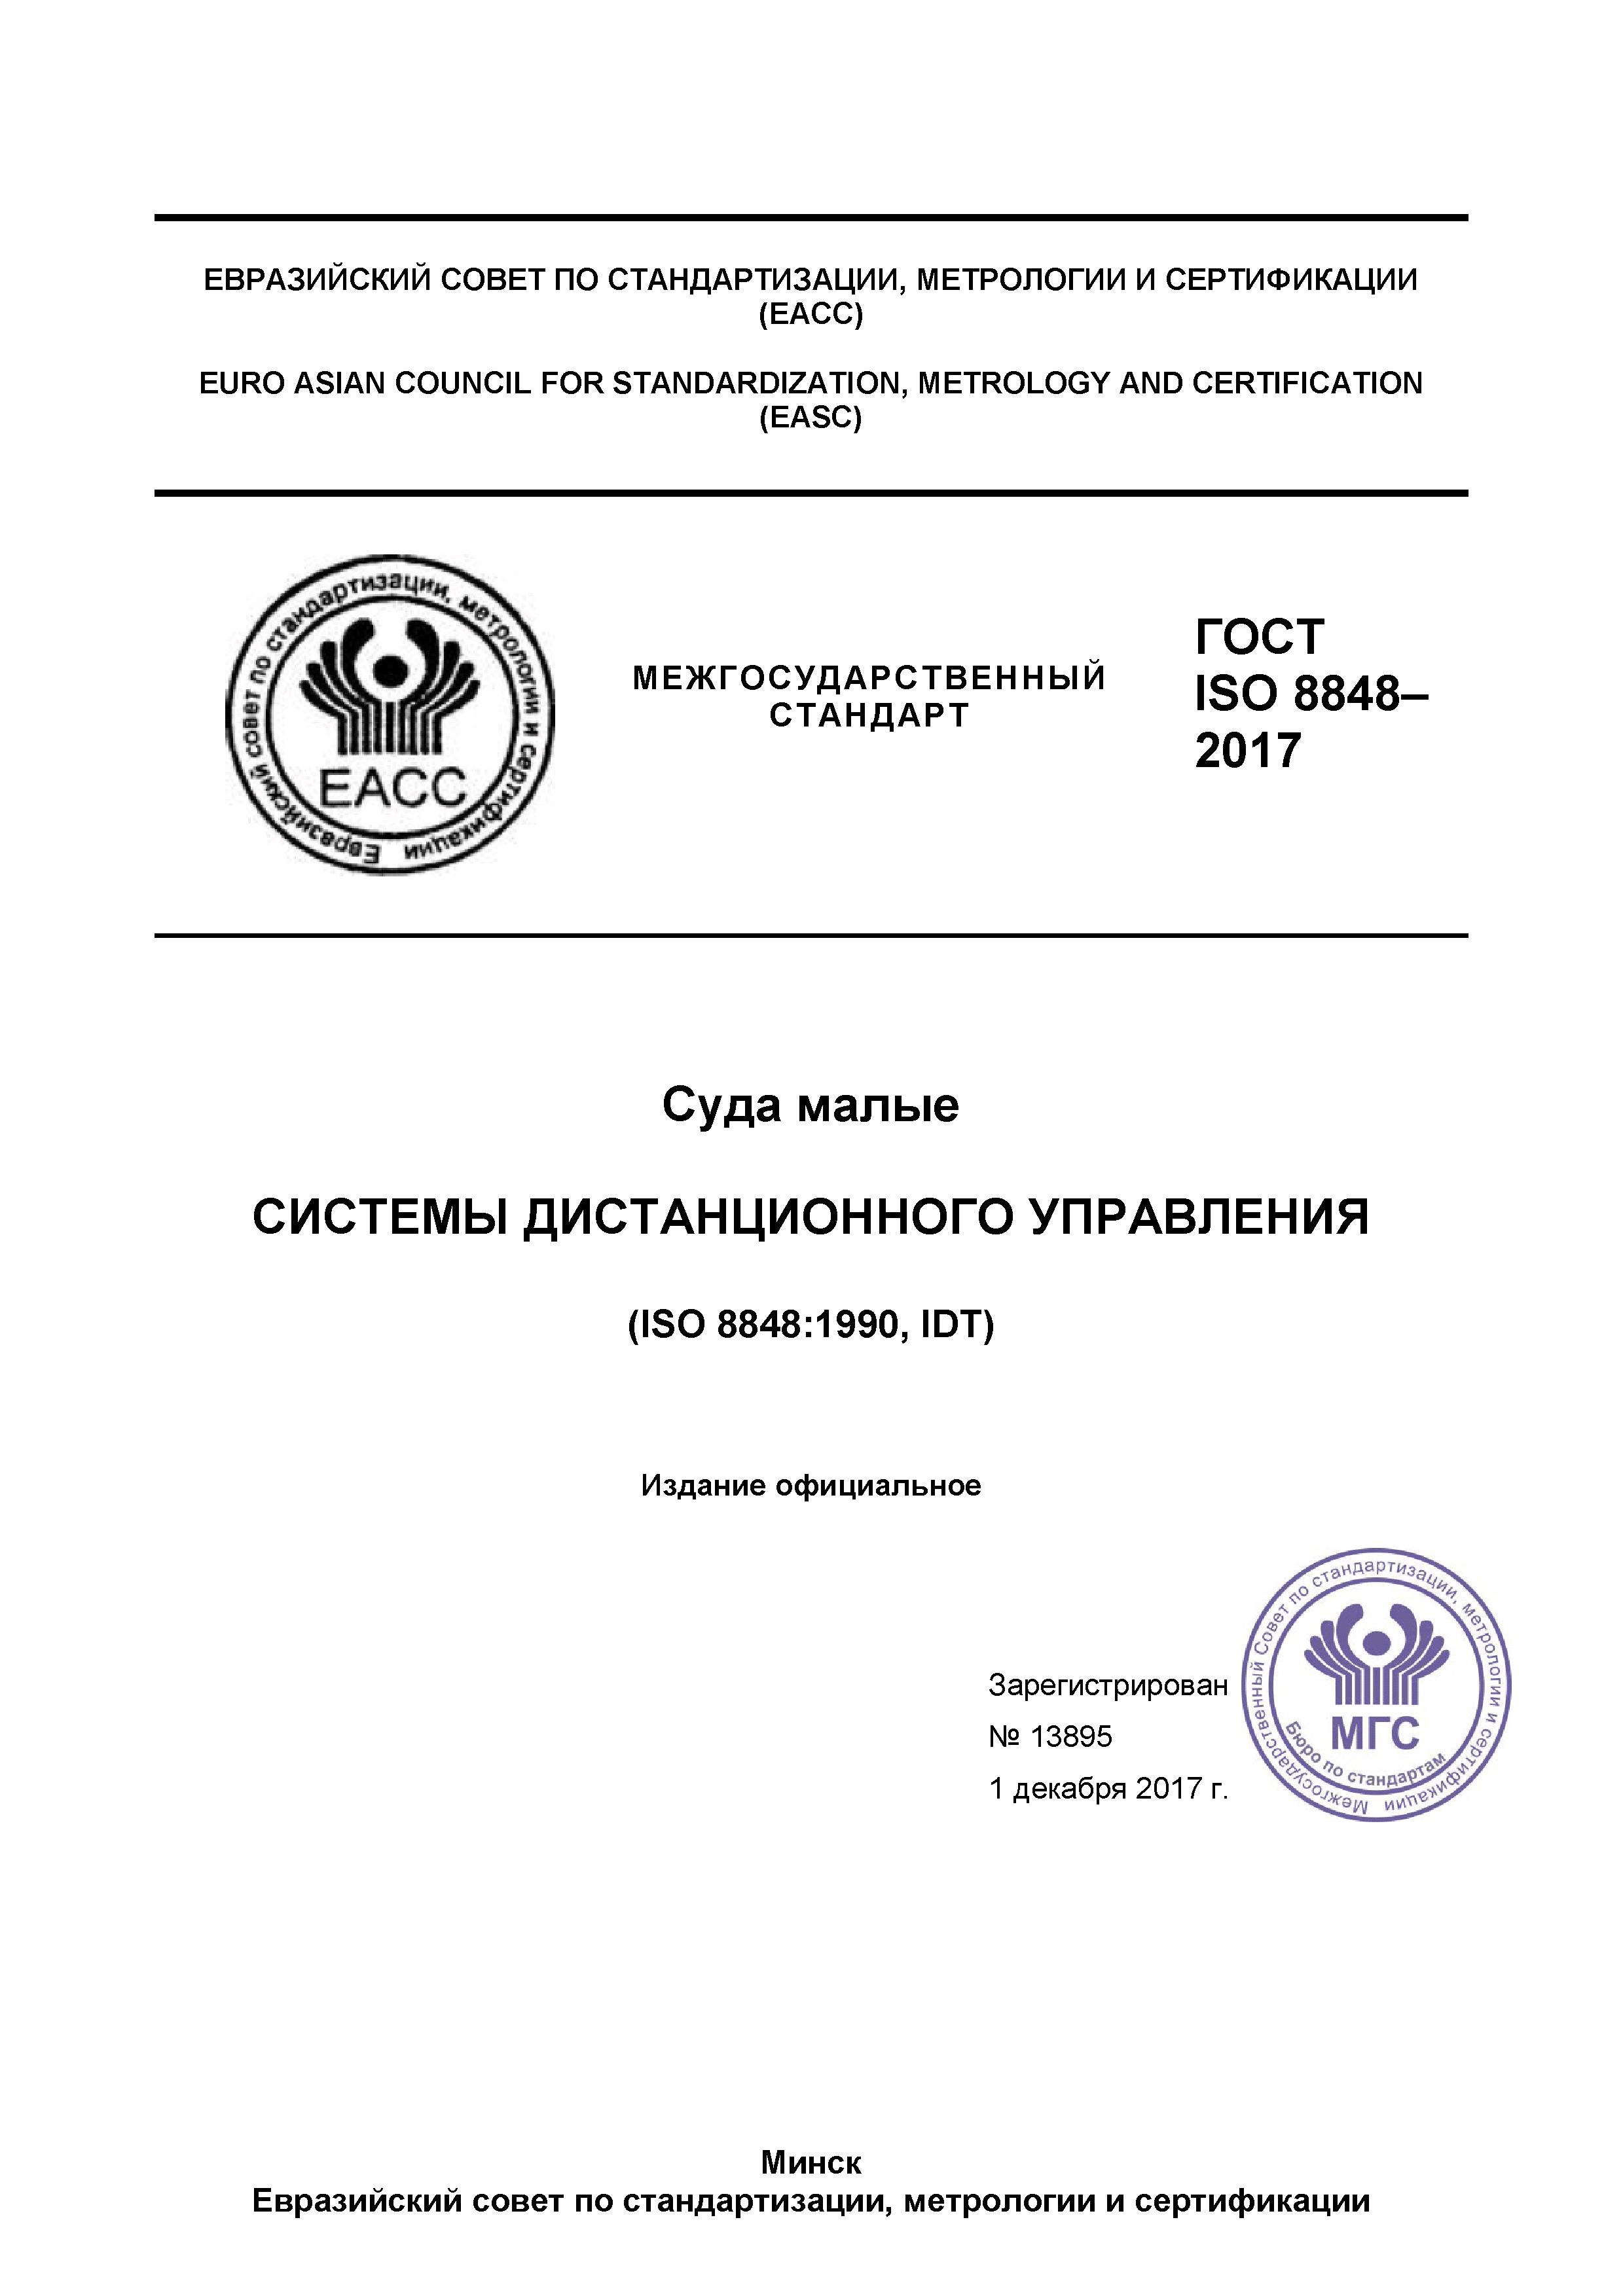 ГОСТ ISO 8848-2017